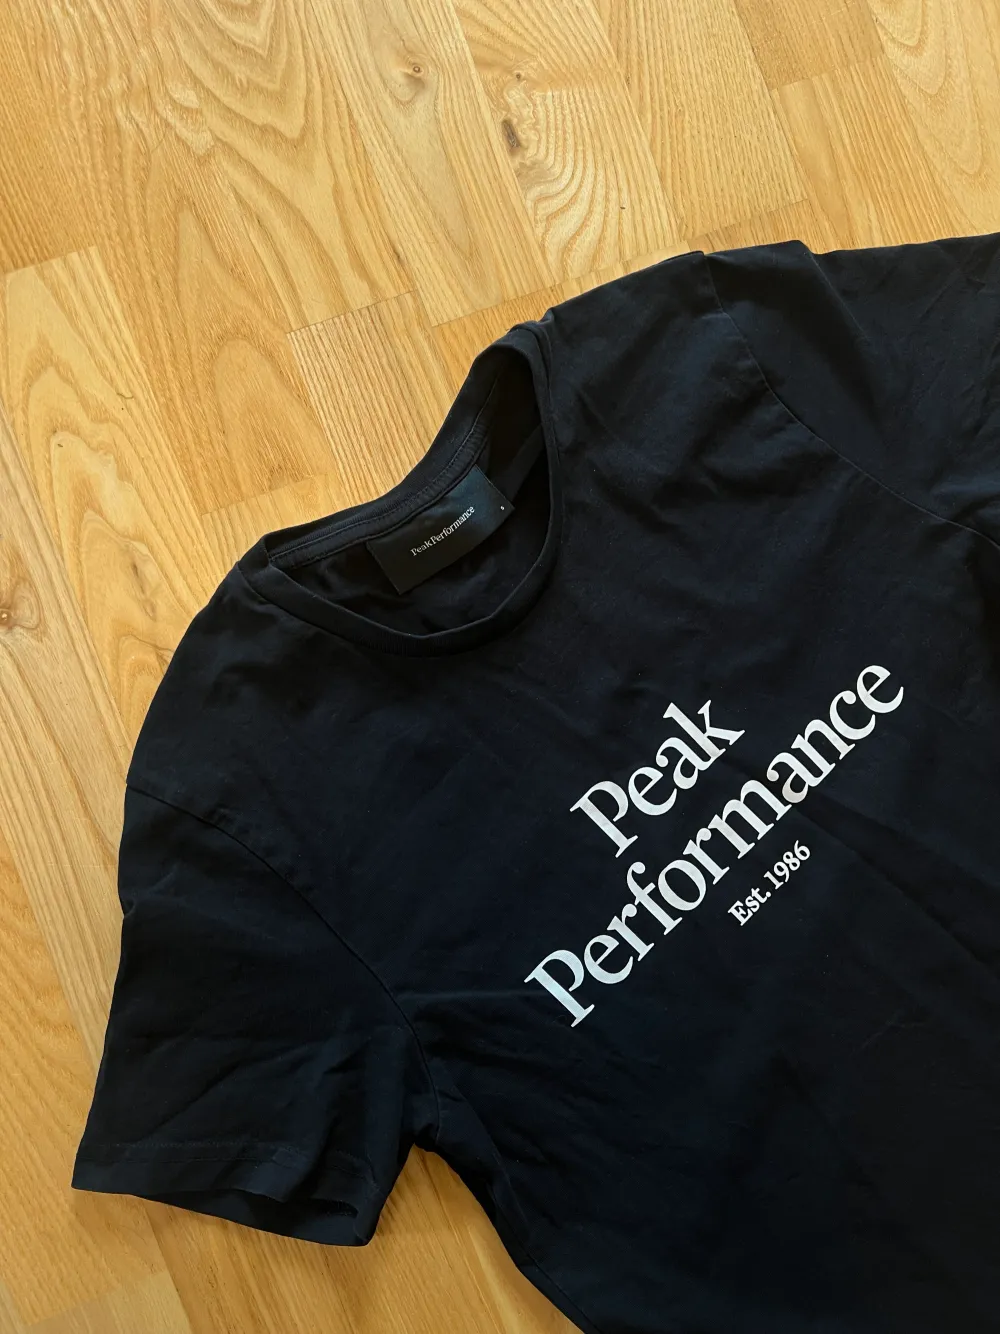 Snygg svart Peak Performance T-shirt. Herrmodell, passar dock oavsett kön. Knappt använd, säljer pga för liten… Nypris 499kr. Stl. S. (Sista bilden är lånad).. T-shirts.